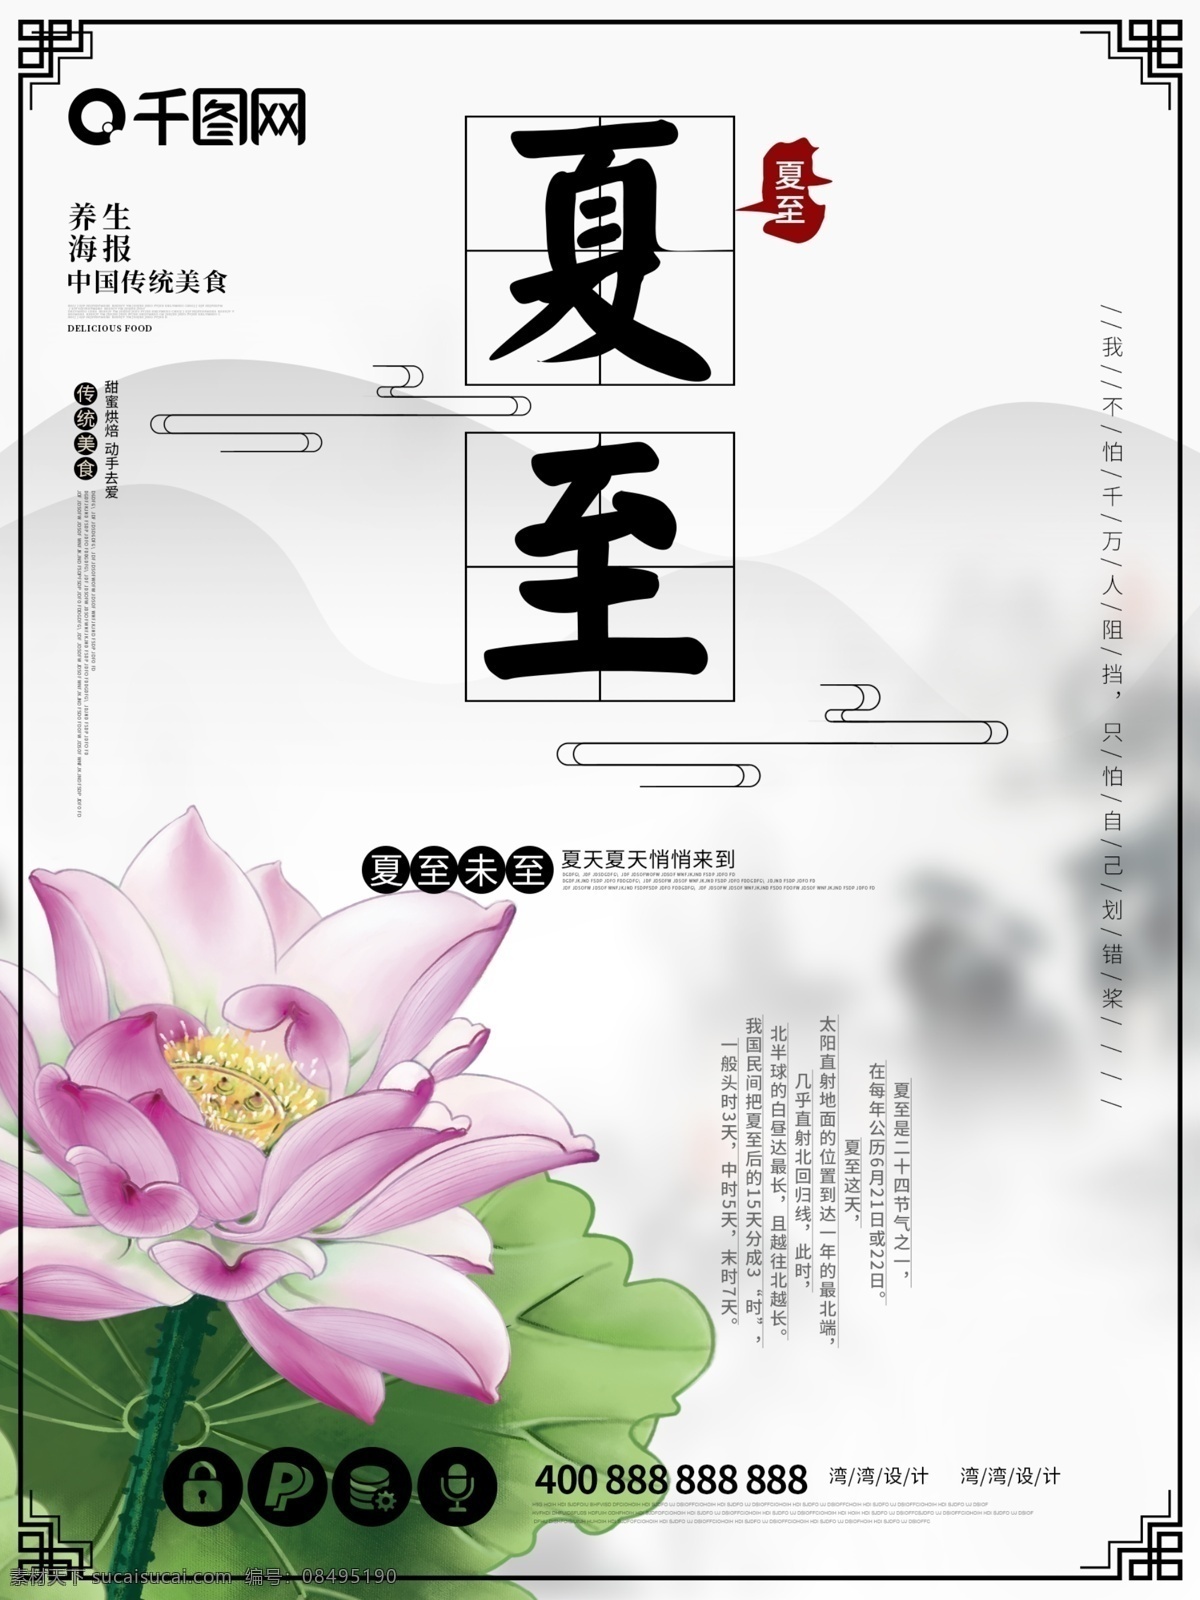 夏至 立夏 原创 中国 风 节气 之一 节日 海报 中国风 24节气之一 传统